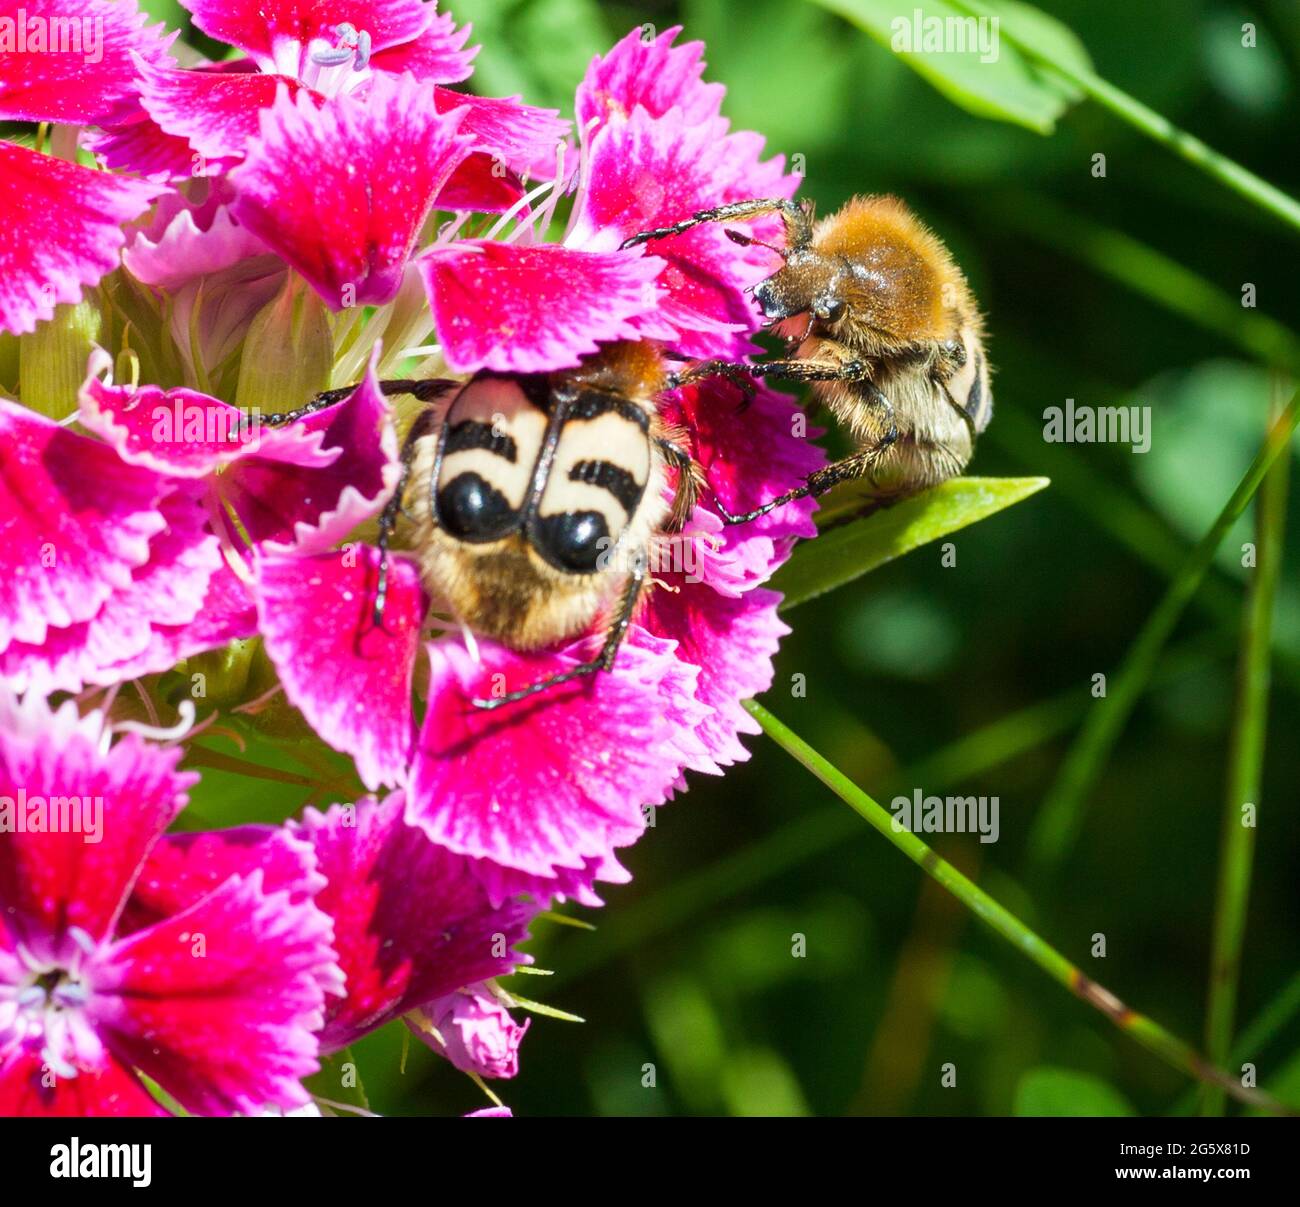 TRICHIUS FASCIATUS Eurasian Bee beetle on flower Stock Photo